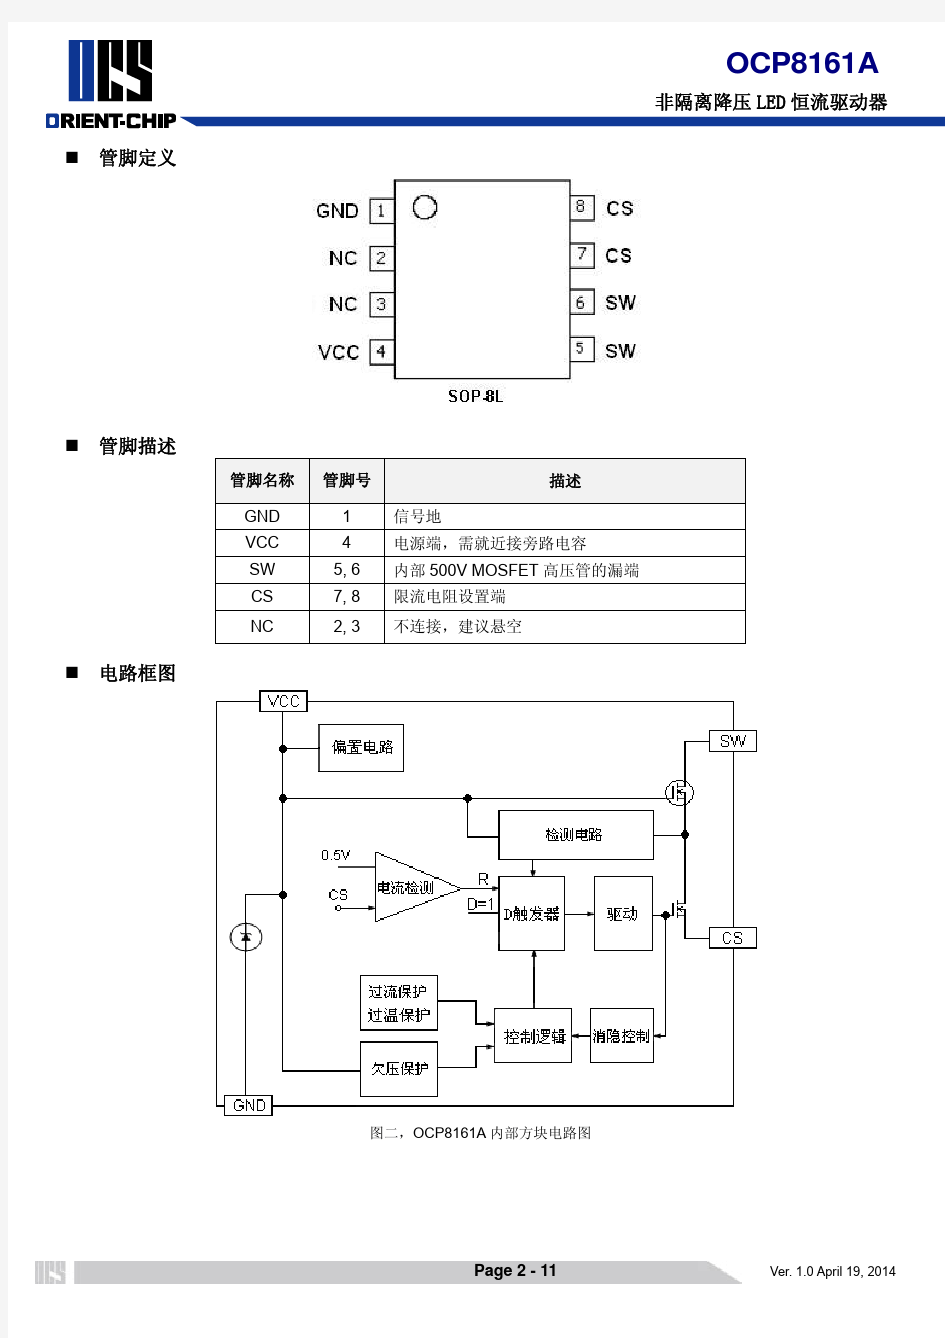 OCP8161A datasheet ver 1.0_20140419_chinese (2)